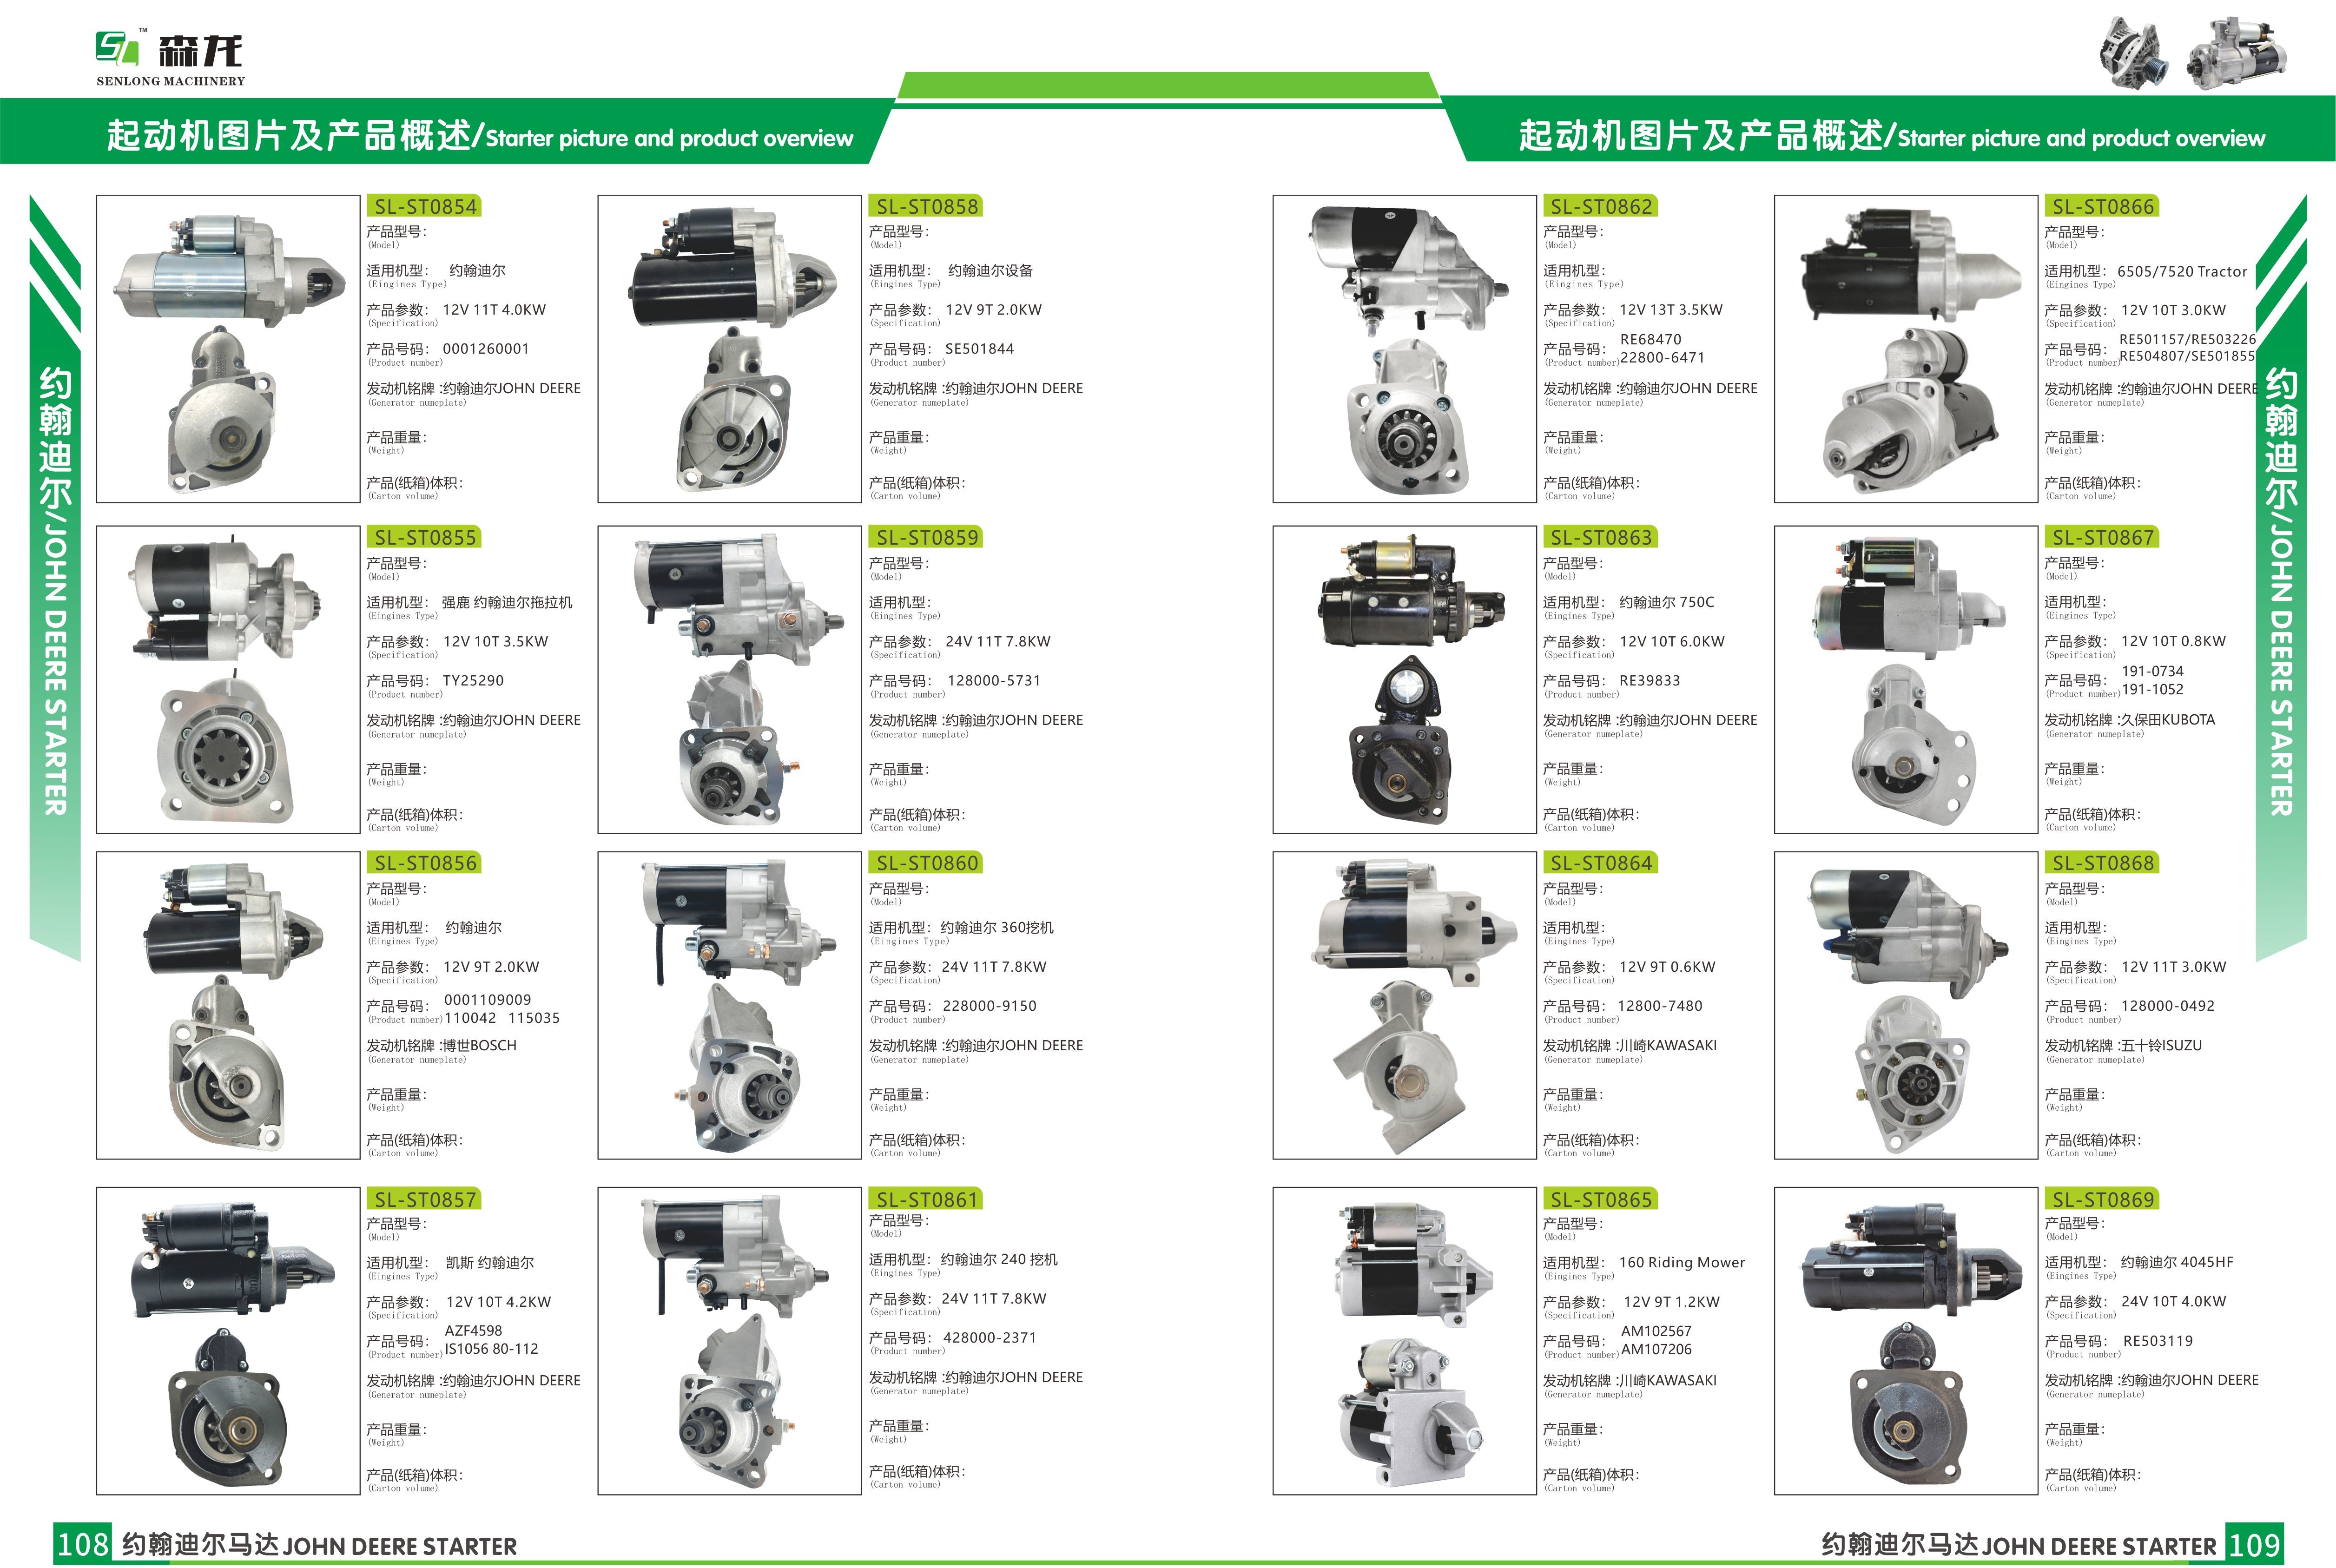 Starter motor Mitsubishi 8DC93 M4T96071, M4T96072, M9T80571, M9T80572, M9T80573, ME094872, ME094873, ME164620, ME164621,